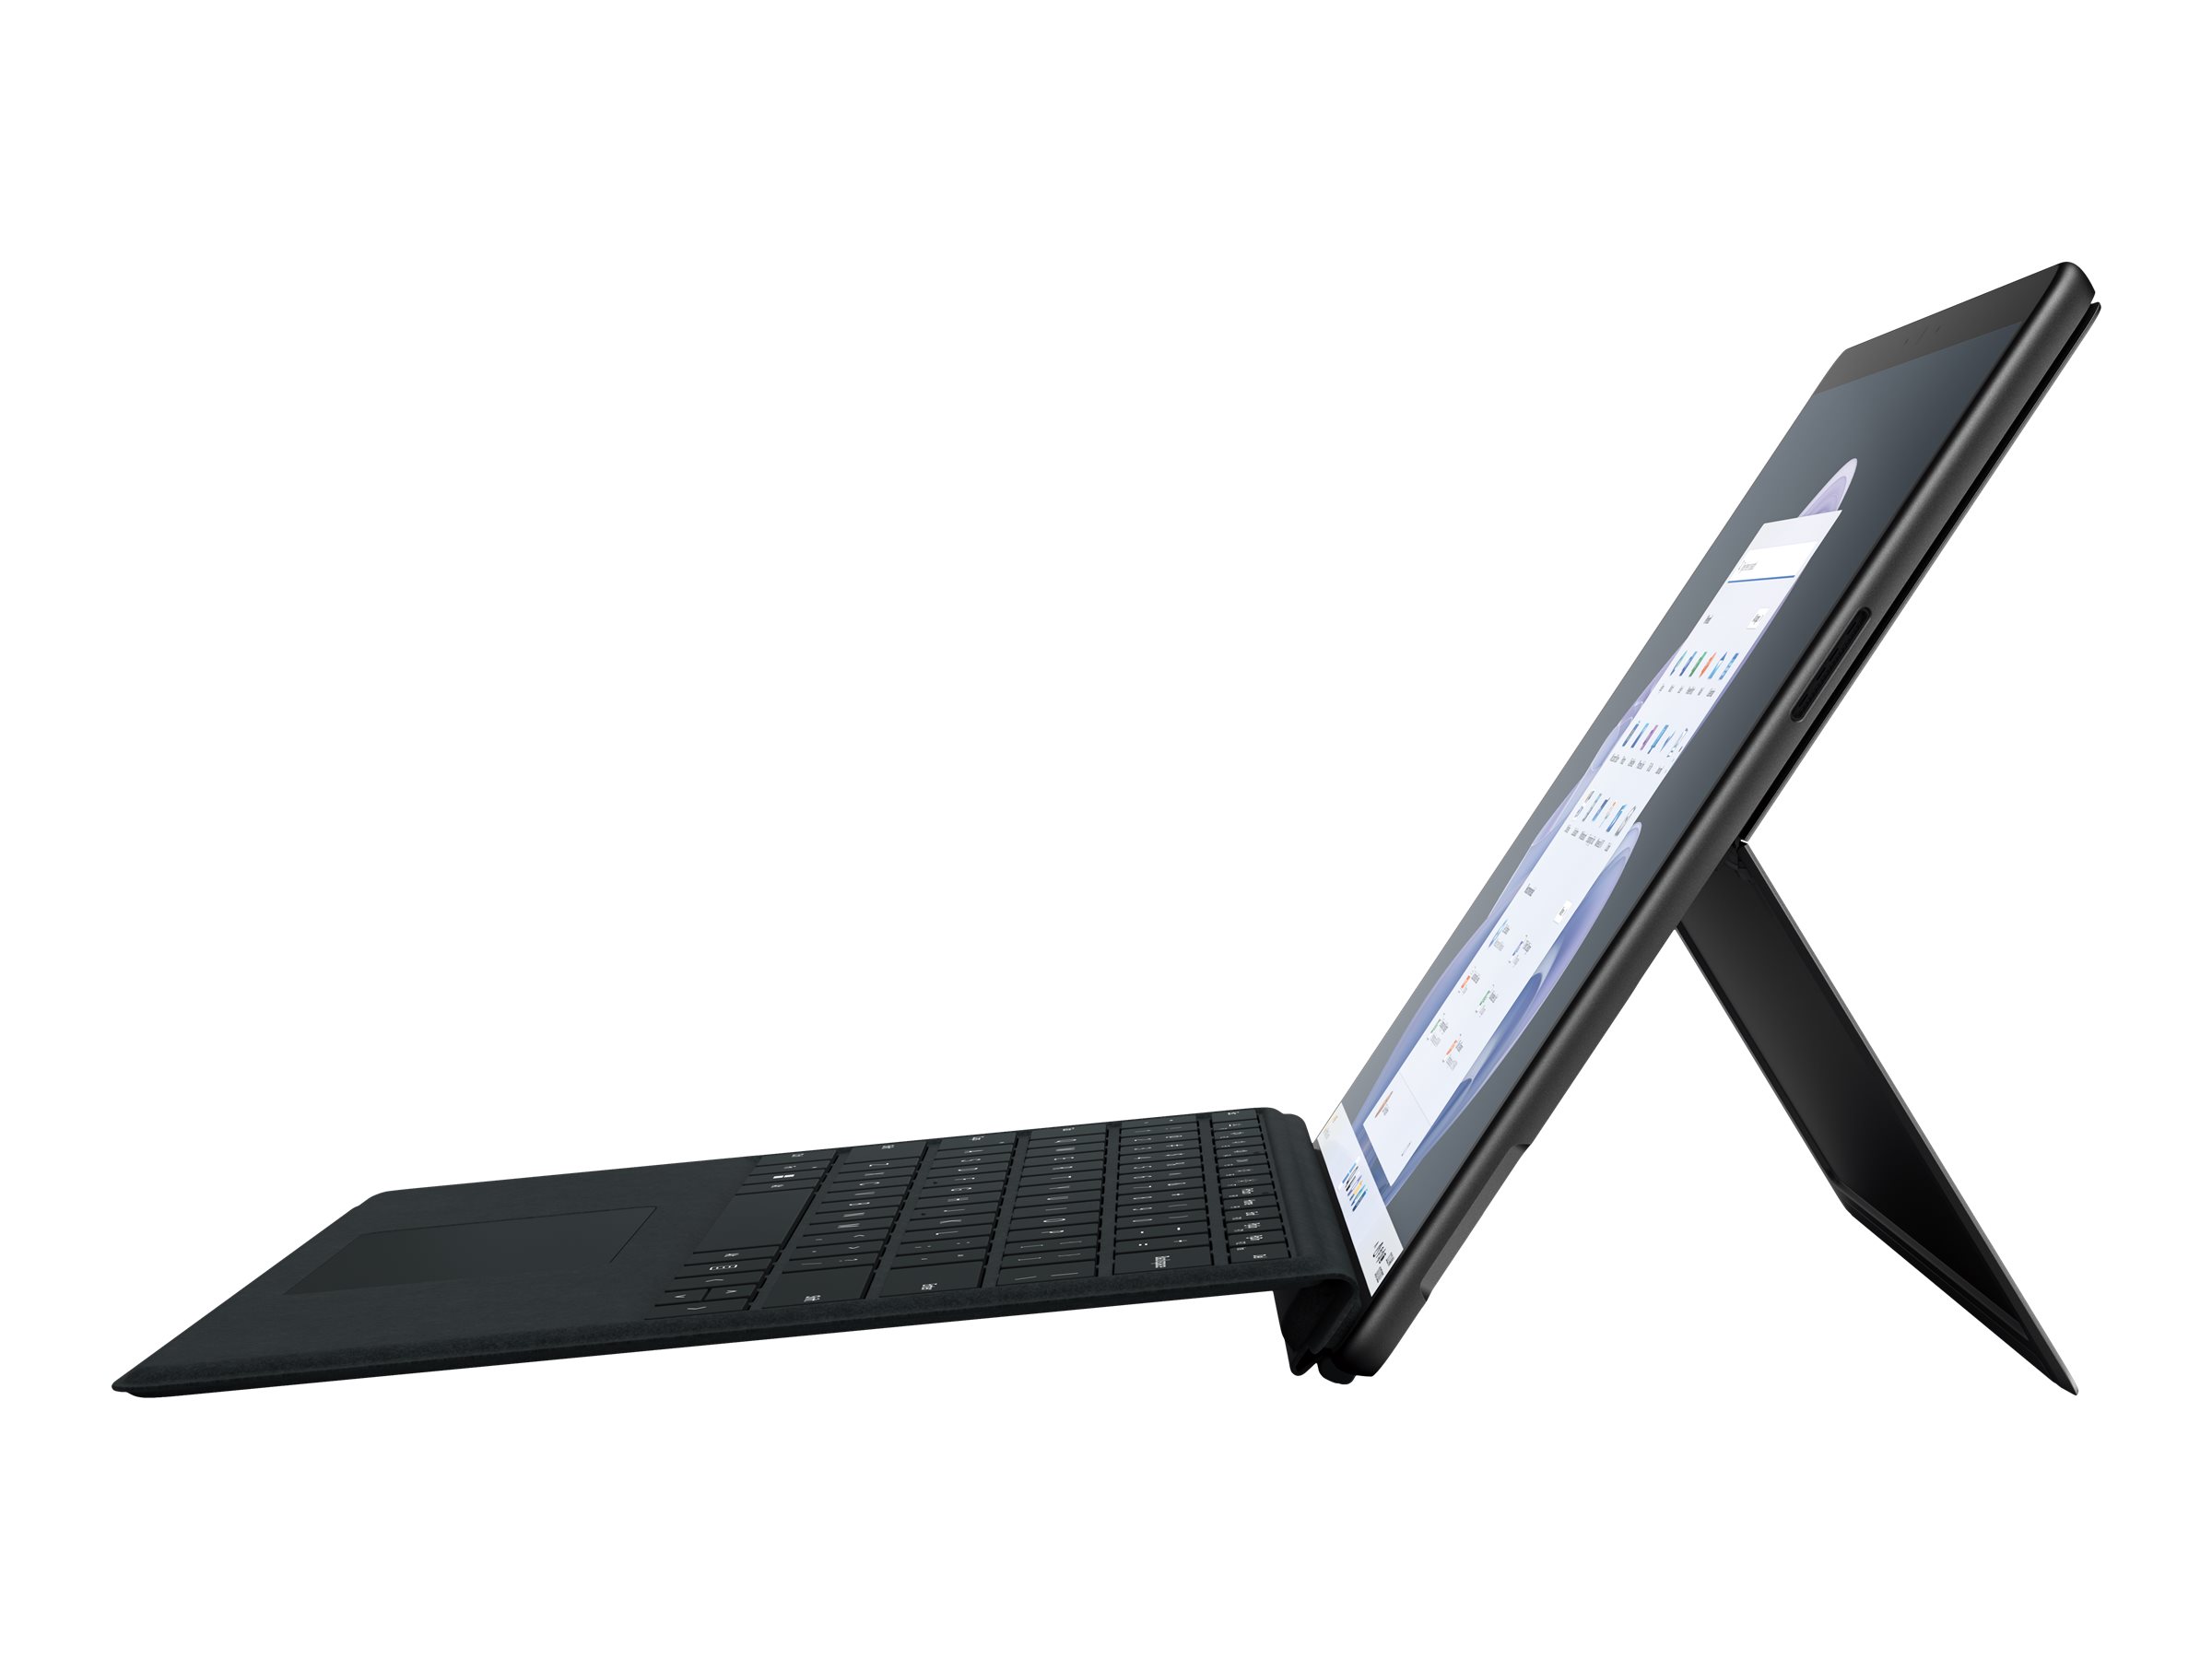 Microsoft Surface Pro 9 for Business - Tablette - Intel Core i5 - 1245U / jusqu'à 4.4 GHz - Evo - Win 10 Pro - Carte graphique Intel Iris Xe - 8 Go RAM - 256 Go SSD - 13" écran tactile 2880 x 1920 @ 120 Hz - Wi-Fi 6E - graphite - S1W-00023 - Ordinateurs portables